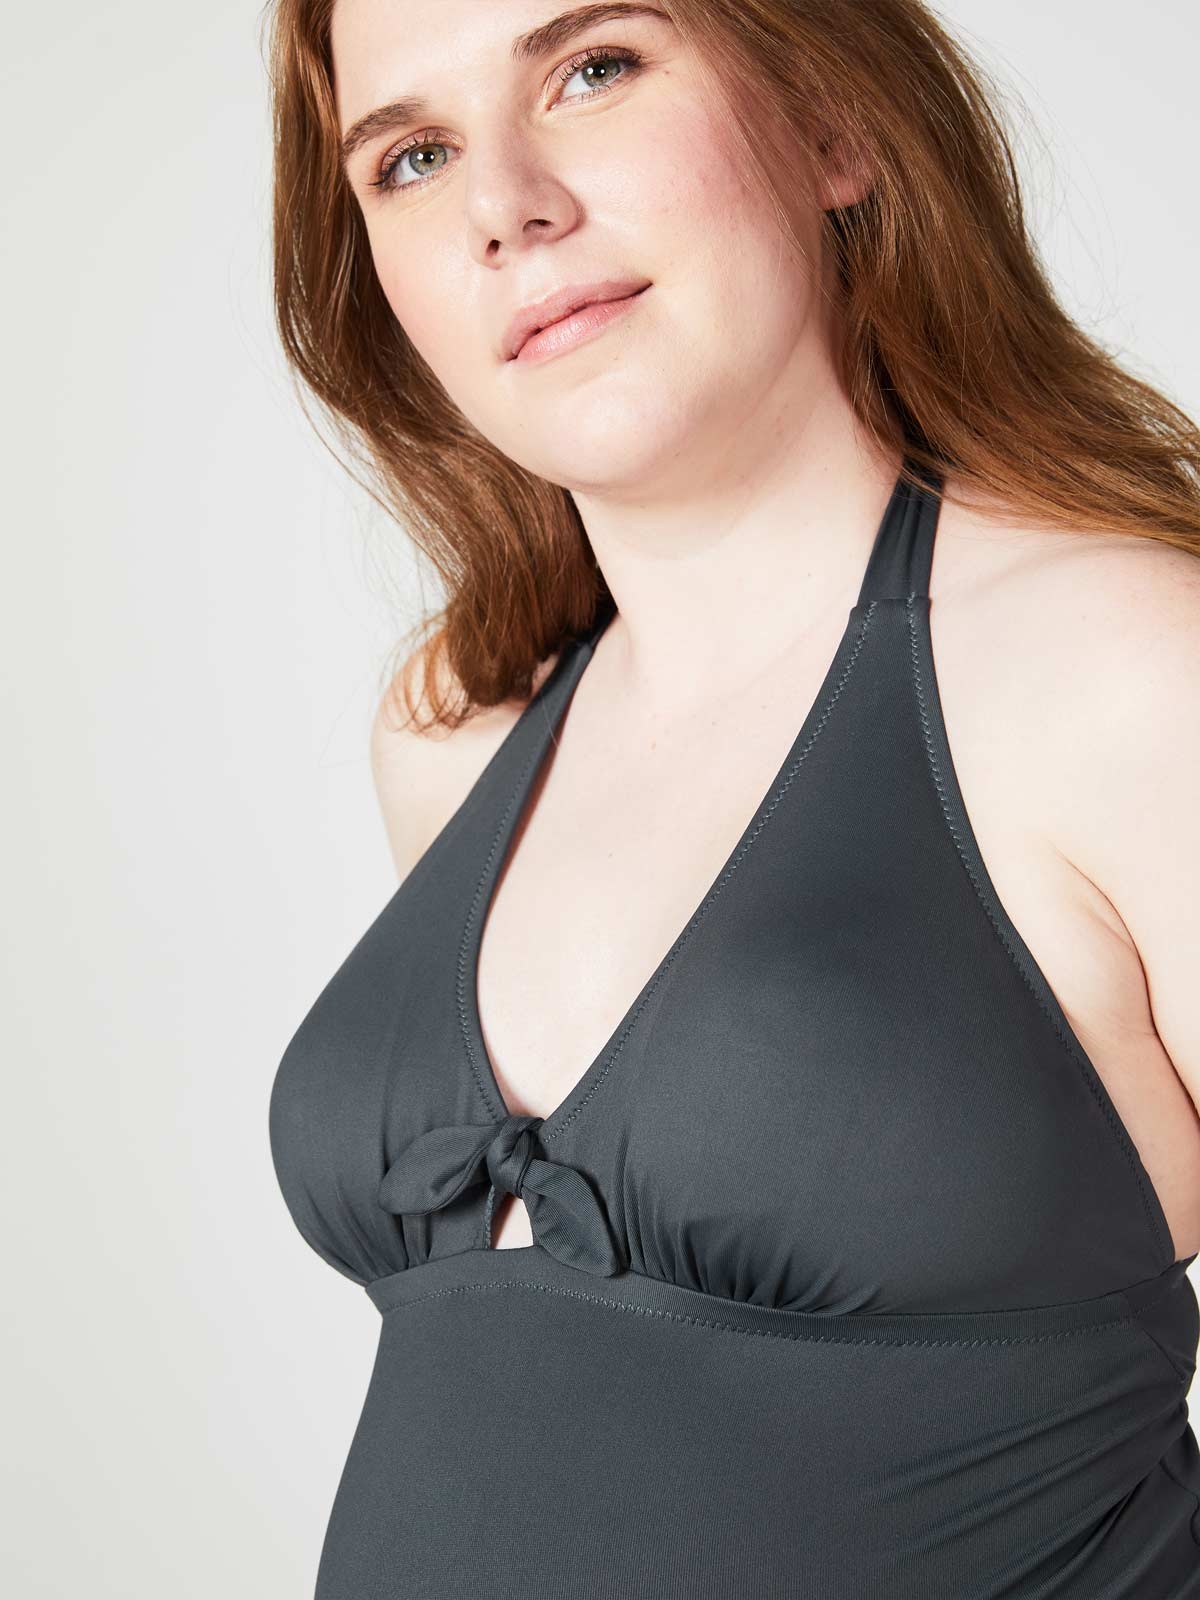 Kombucha One-Piece Maternity Swimsuit (B-E Cups)